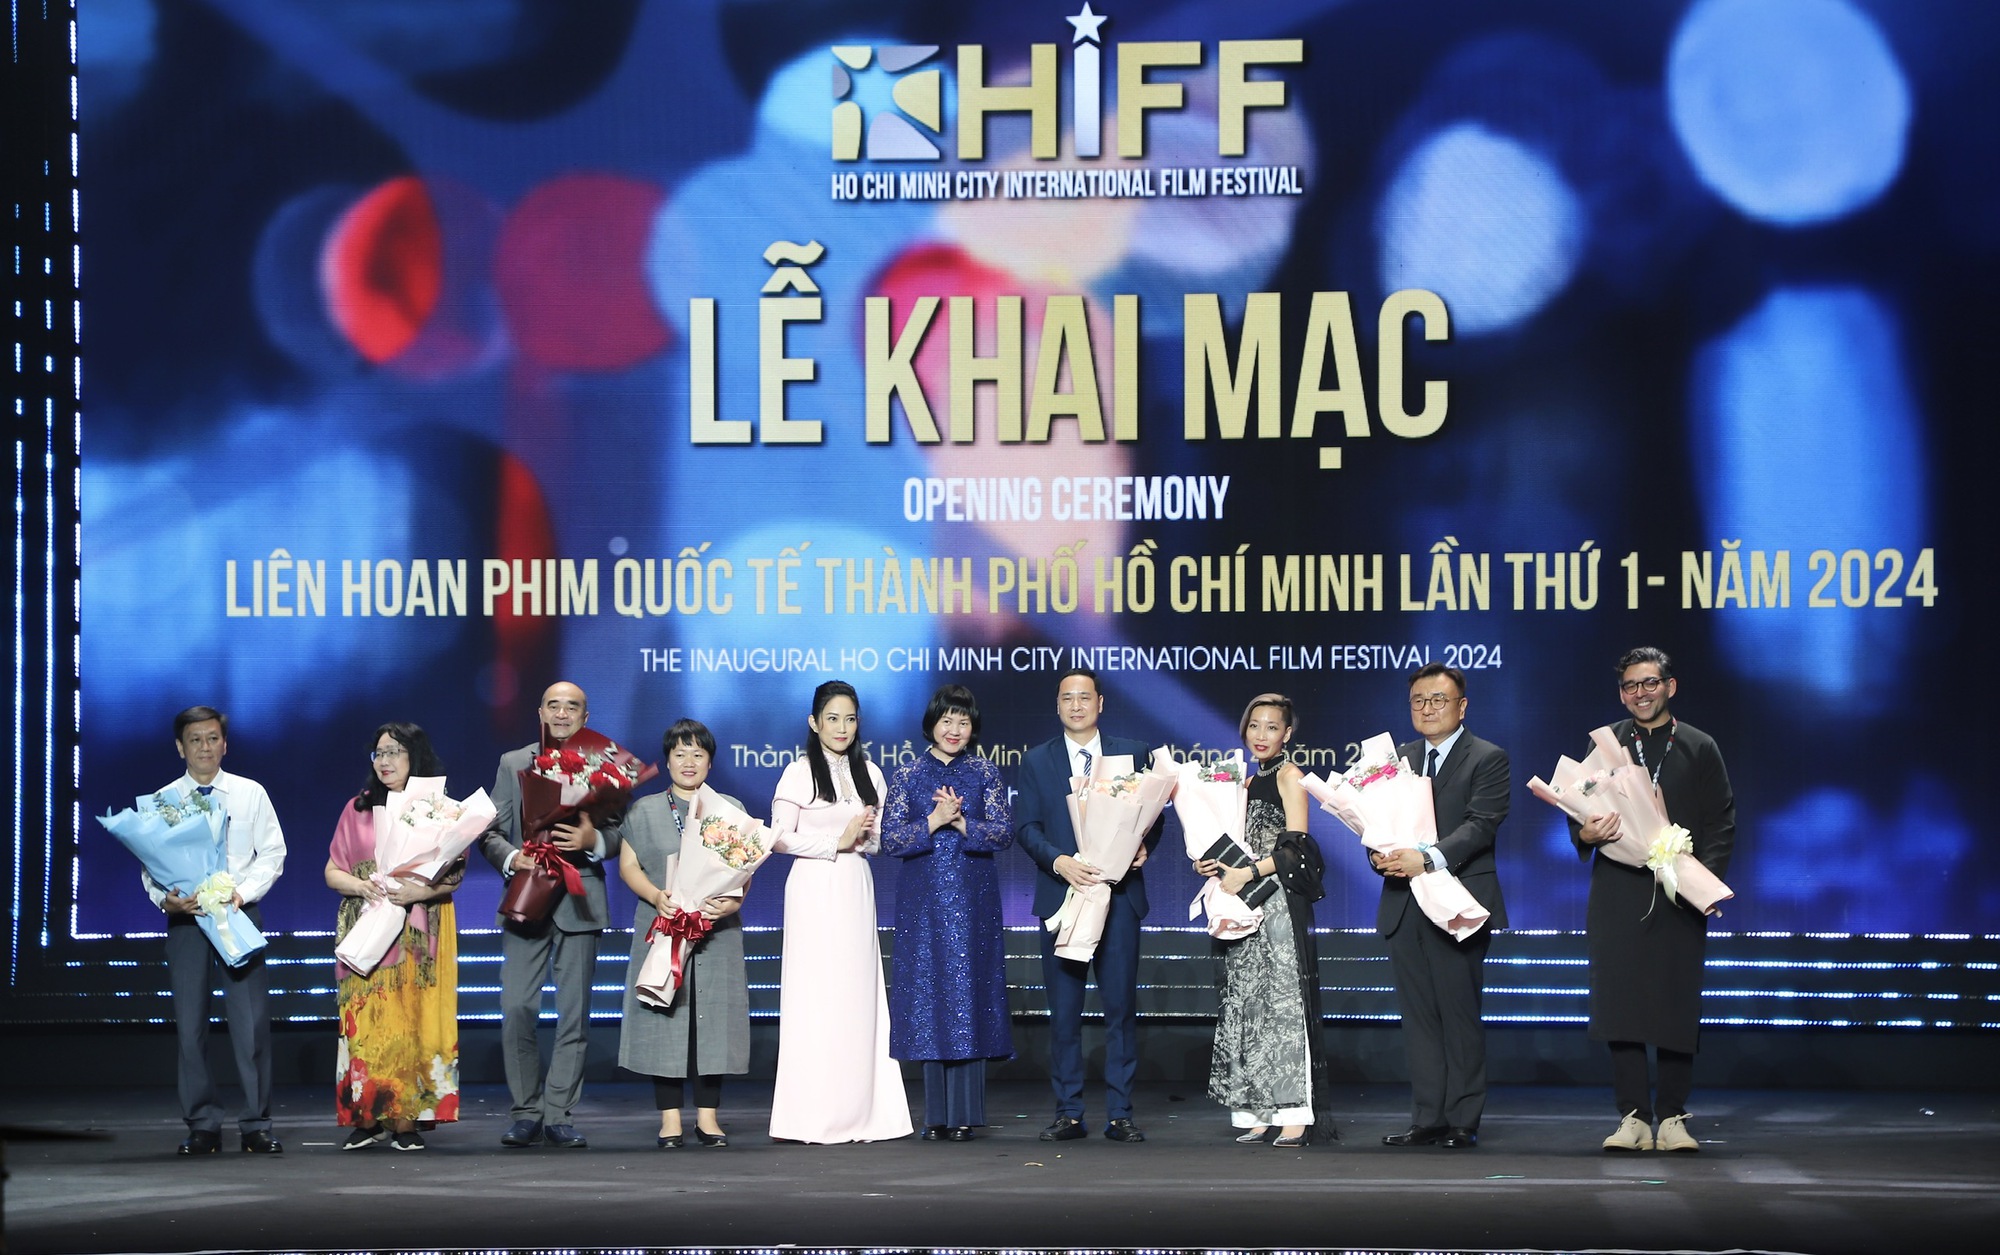 Khai mạc Liên hoan Phim quốc tế Thành phố Hồ Chí Minh lần thứ 1 - HIFF 2024 - Ảnh 6.